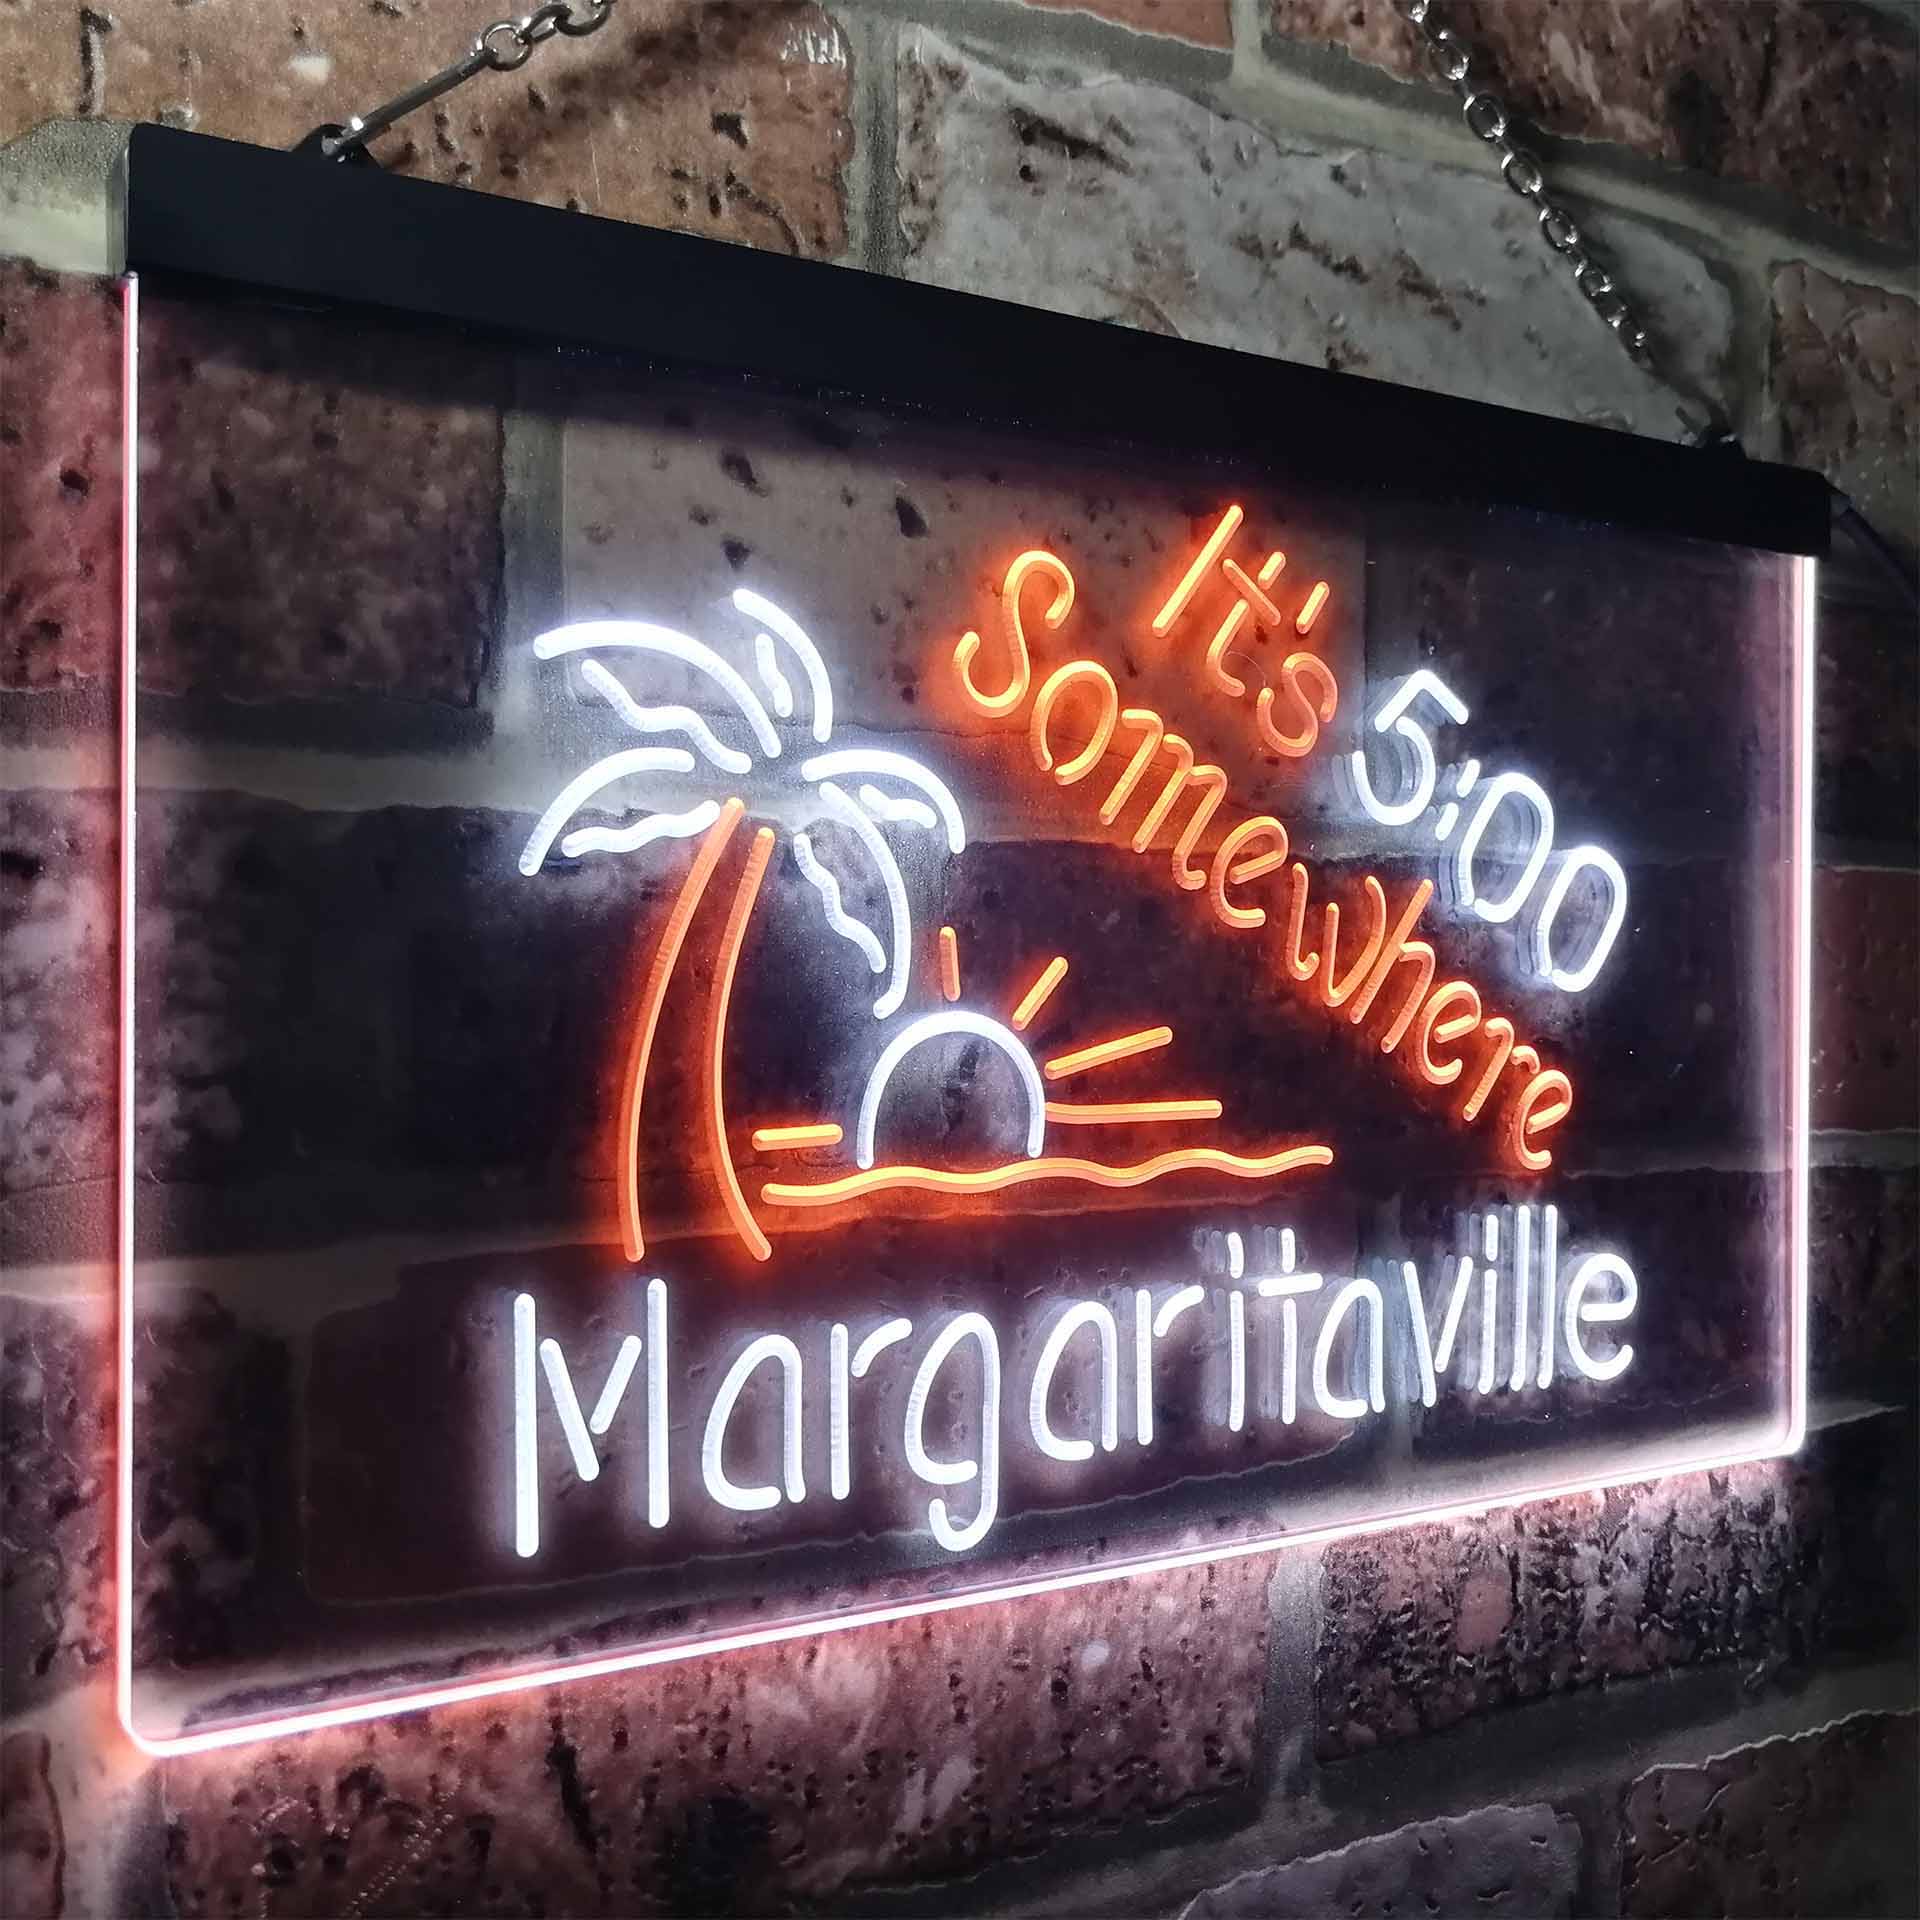 It's 500 Somewhere Margaritaville LED Neon Sign